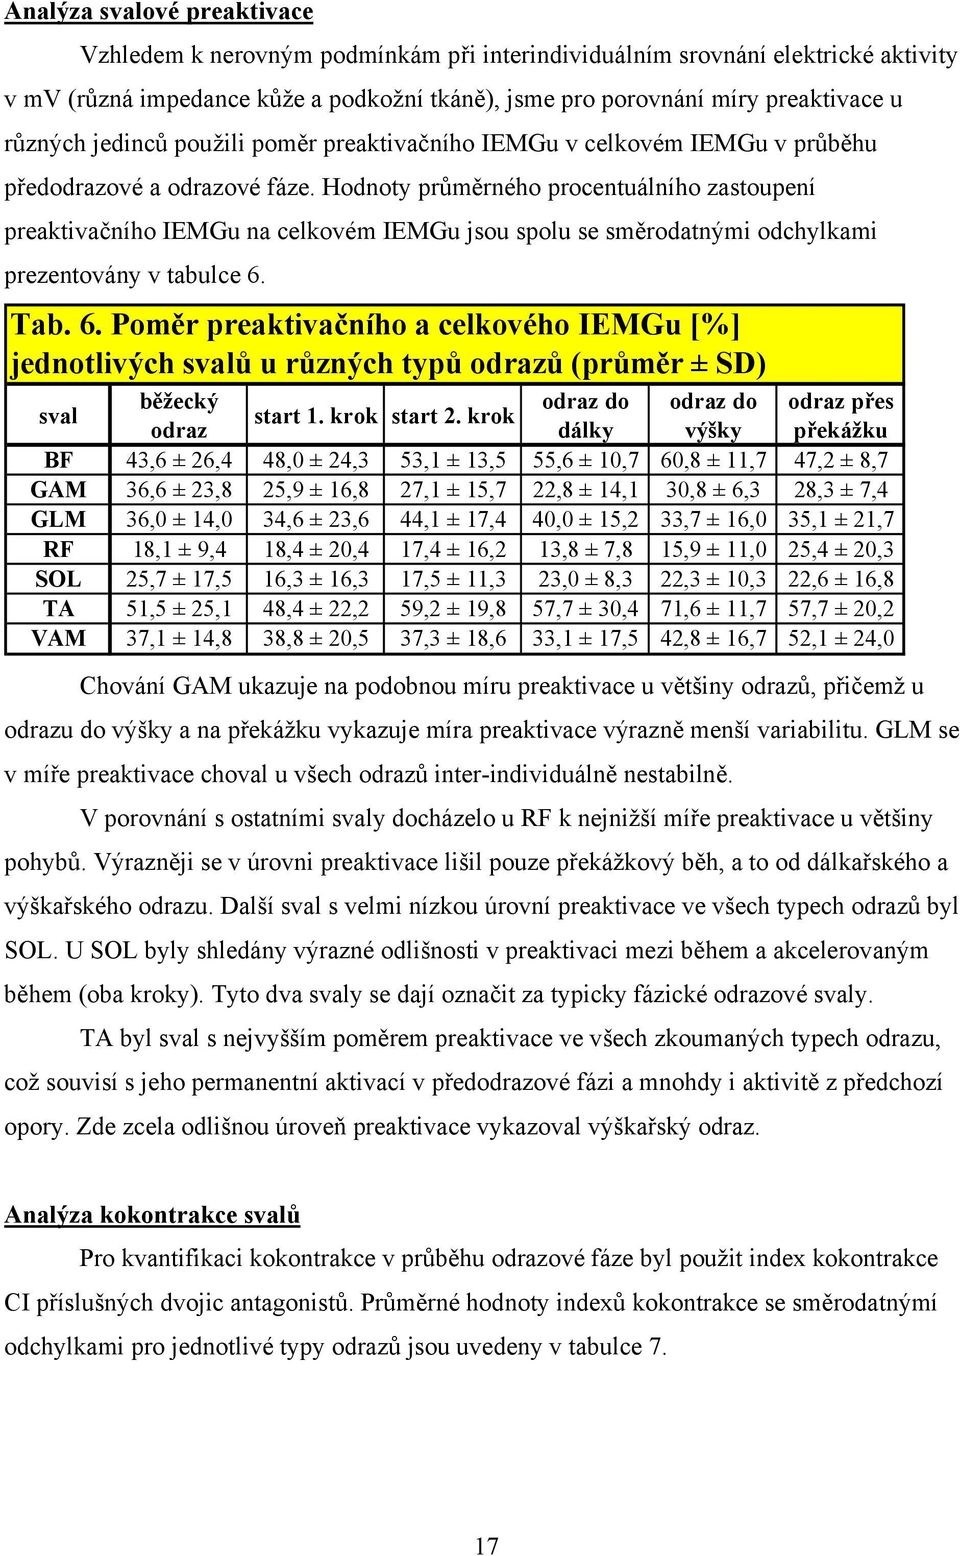 Hodnoty průměrného procentuálního zastoupení preaktivačního IEMGu na celkovém IEMGu jsou spolu se směrodatnými odchylkami prezentovány v tabulce 6.